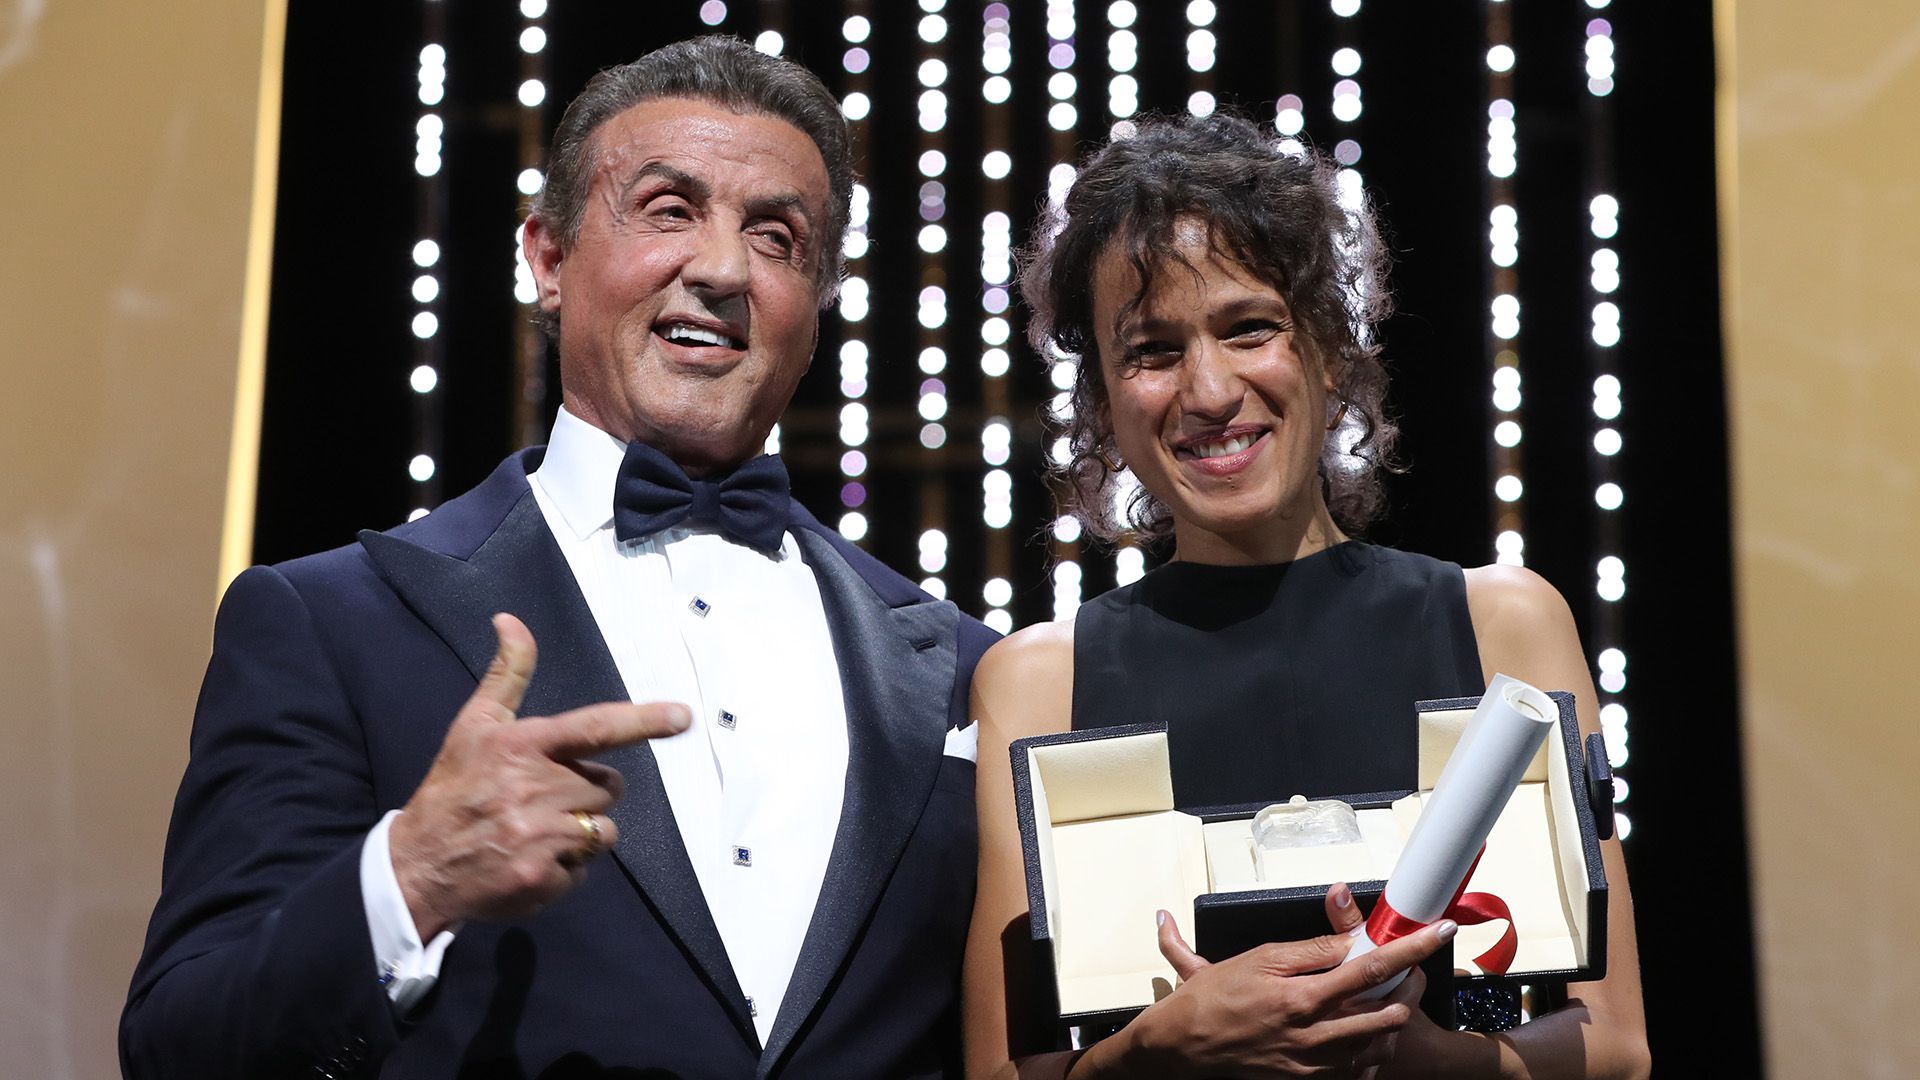 La actriz y cineasta francesa Mati Diop recibió el Gran Premio de Cannes de manos de Sylvester Stallone por su película “Atlantique” (Photo by Valery HACHE / AFP)